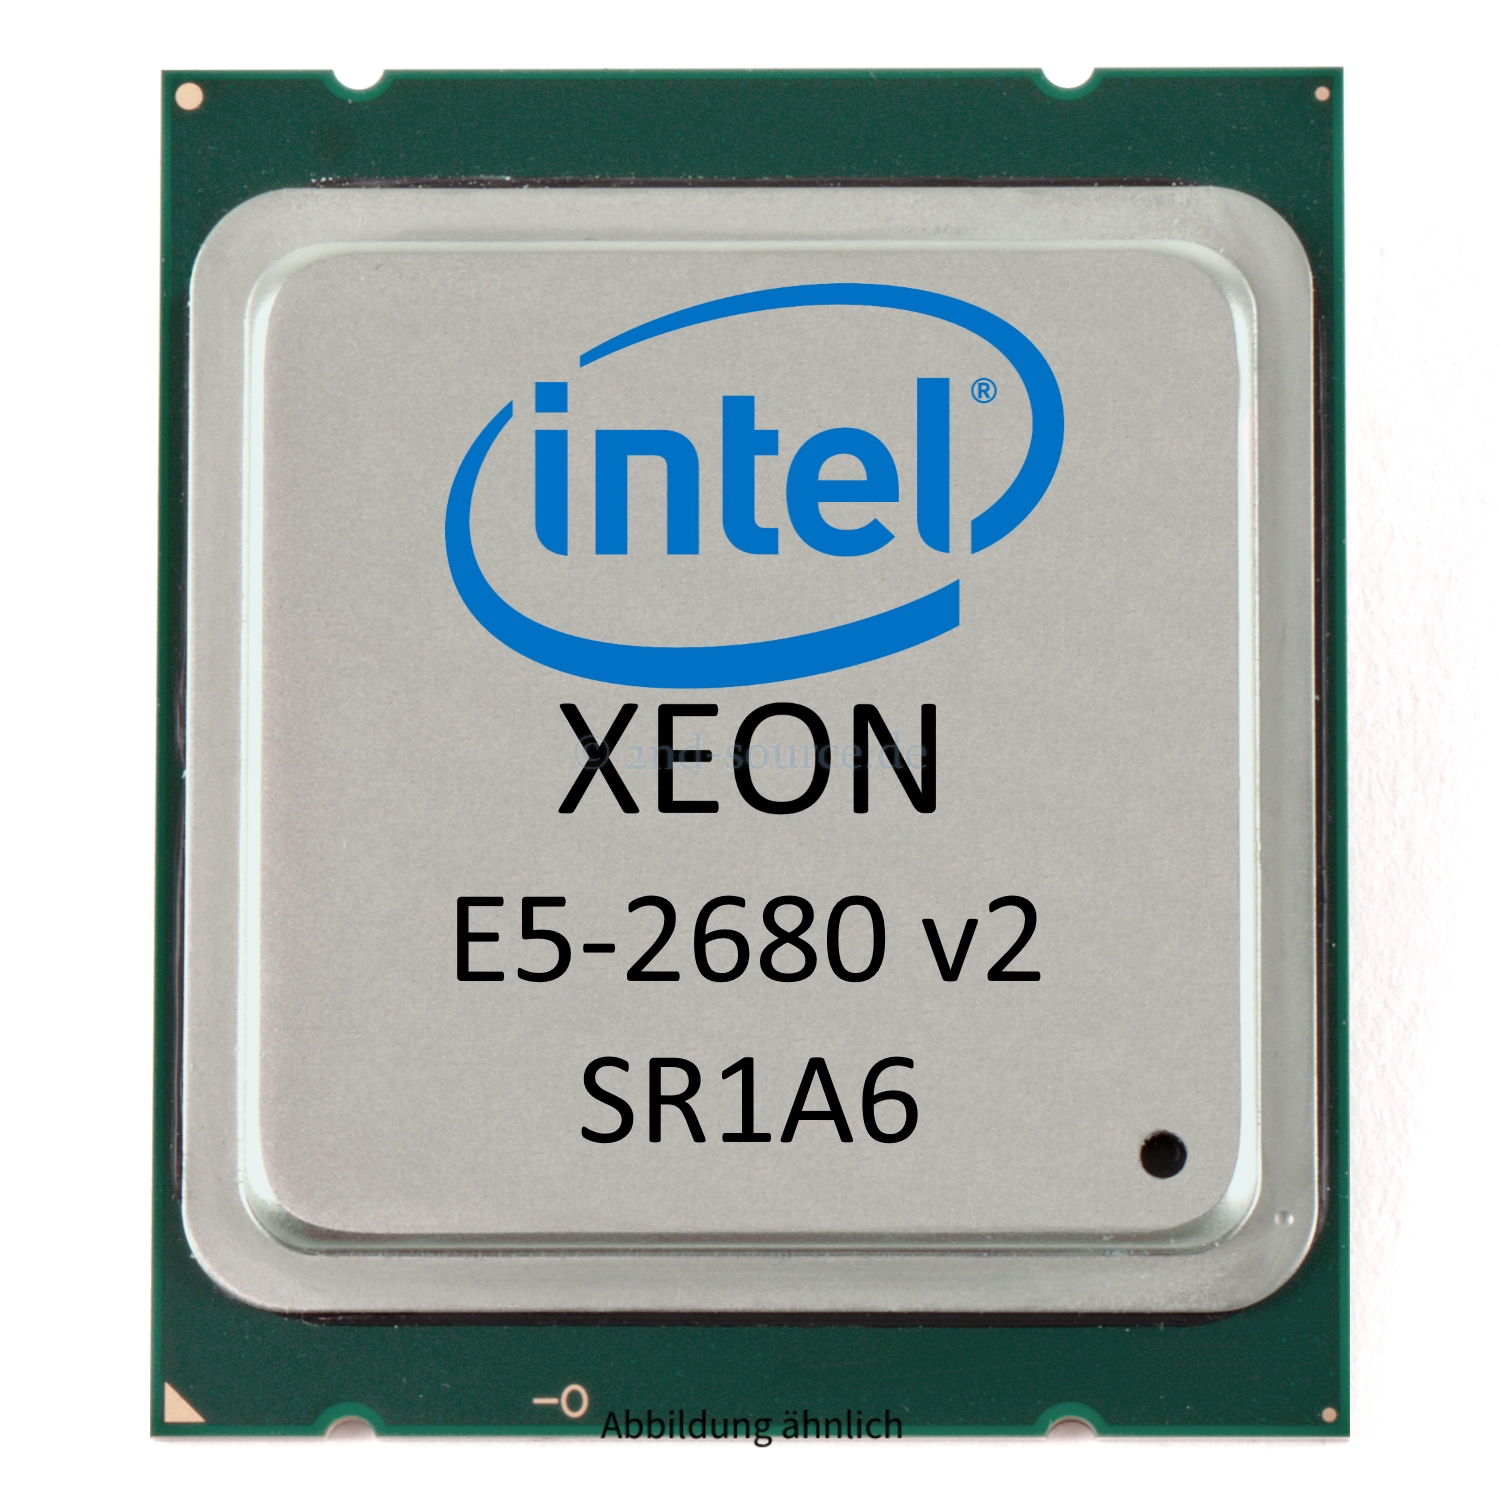 Intel Xeon E5-2680 v2 2.80GHz 25MB 10-Core CPU 115W SR1A6 CM8063501374901